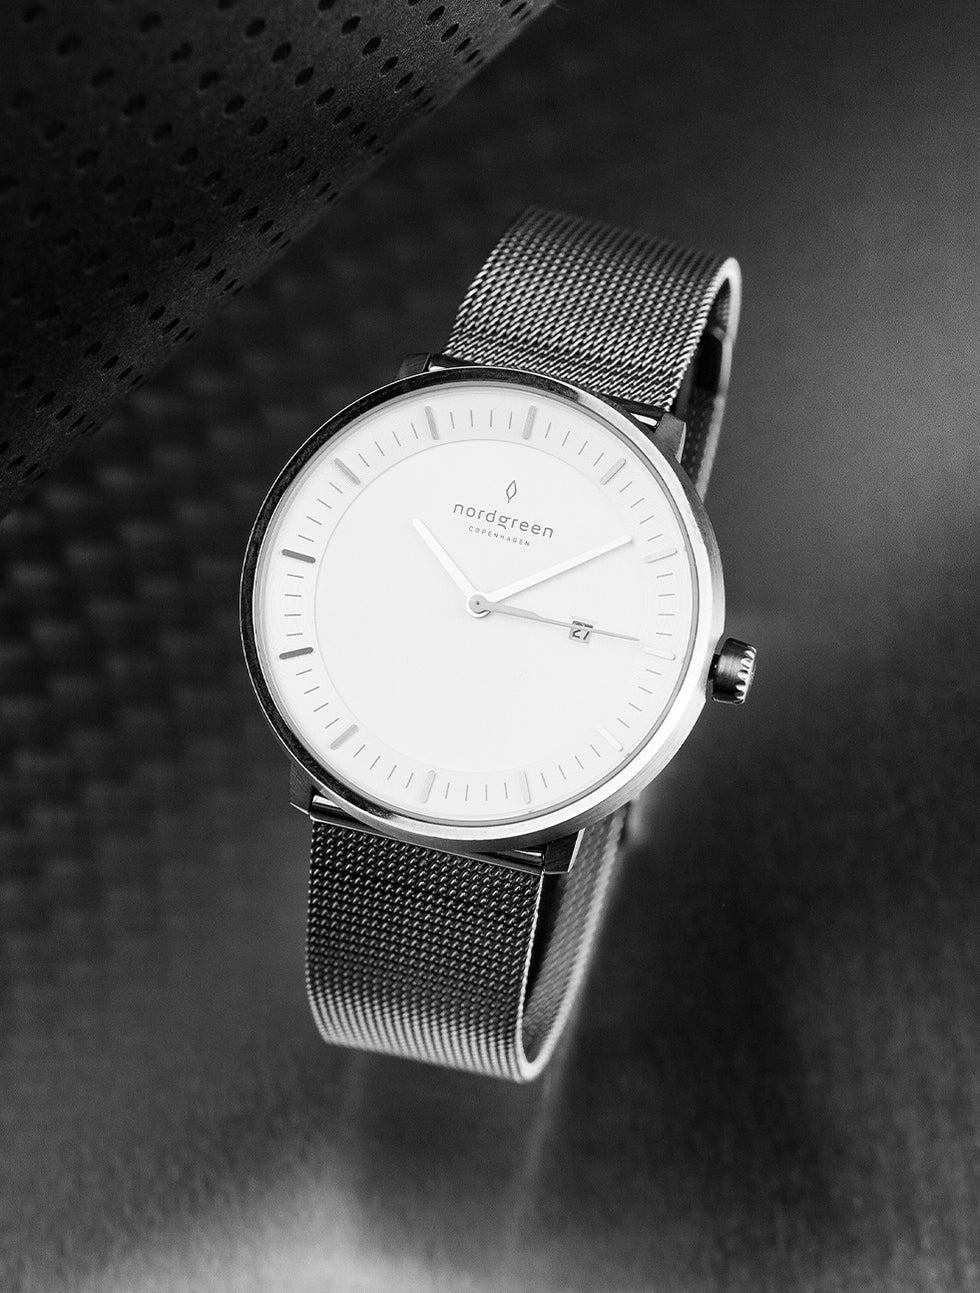 レディース腕時計のギフトガイド: プレゼントであればNordgreen日本公式でゲット